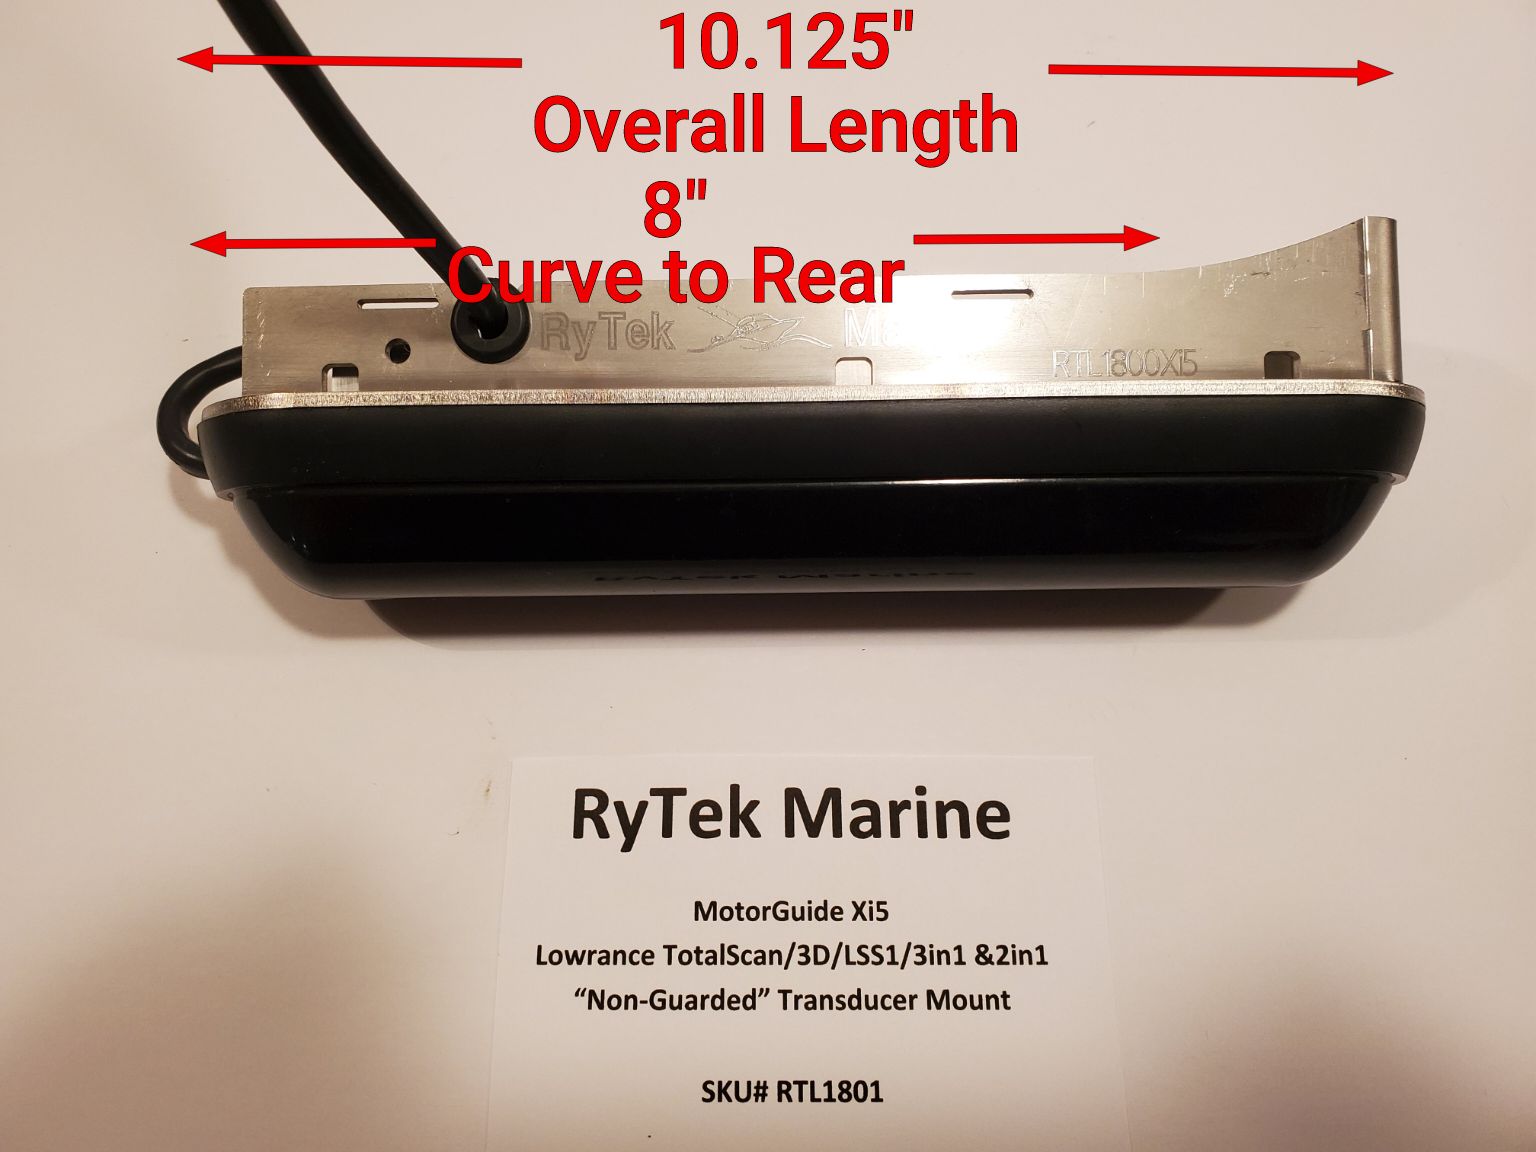 RTL4500 Lowrance Tripleshot Auxiliary Transducer Mount – RyTek Marine